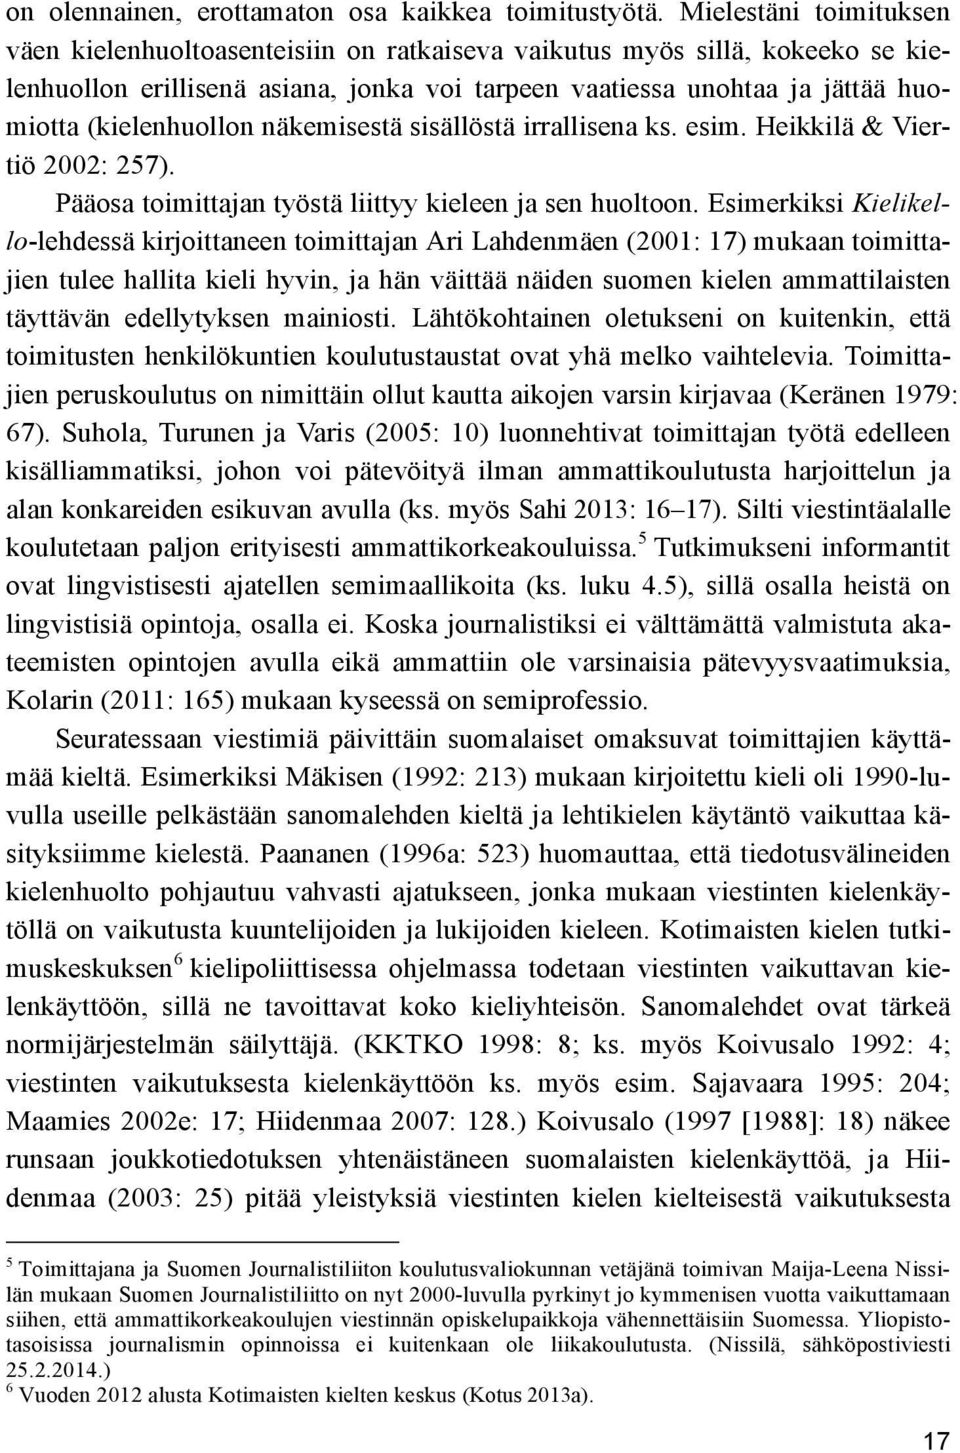 (kielenhuollon näkemisestä sisällöstä irrallisena ks. esim. Heikkilä & Viertiö 2002: 257). Pääosa toimittajan työstä liittyy kieleen ja sen huoltoon.